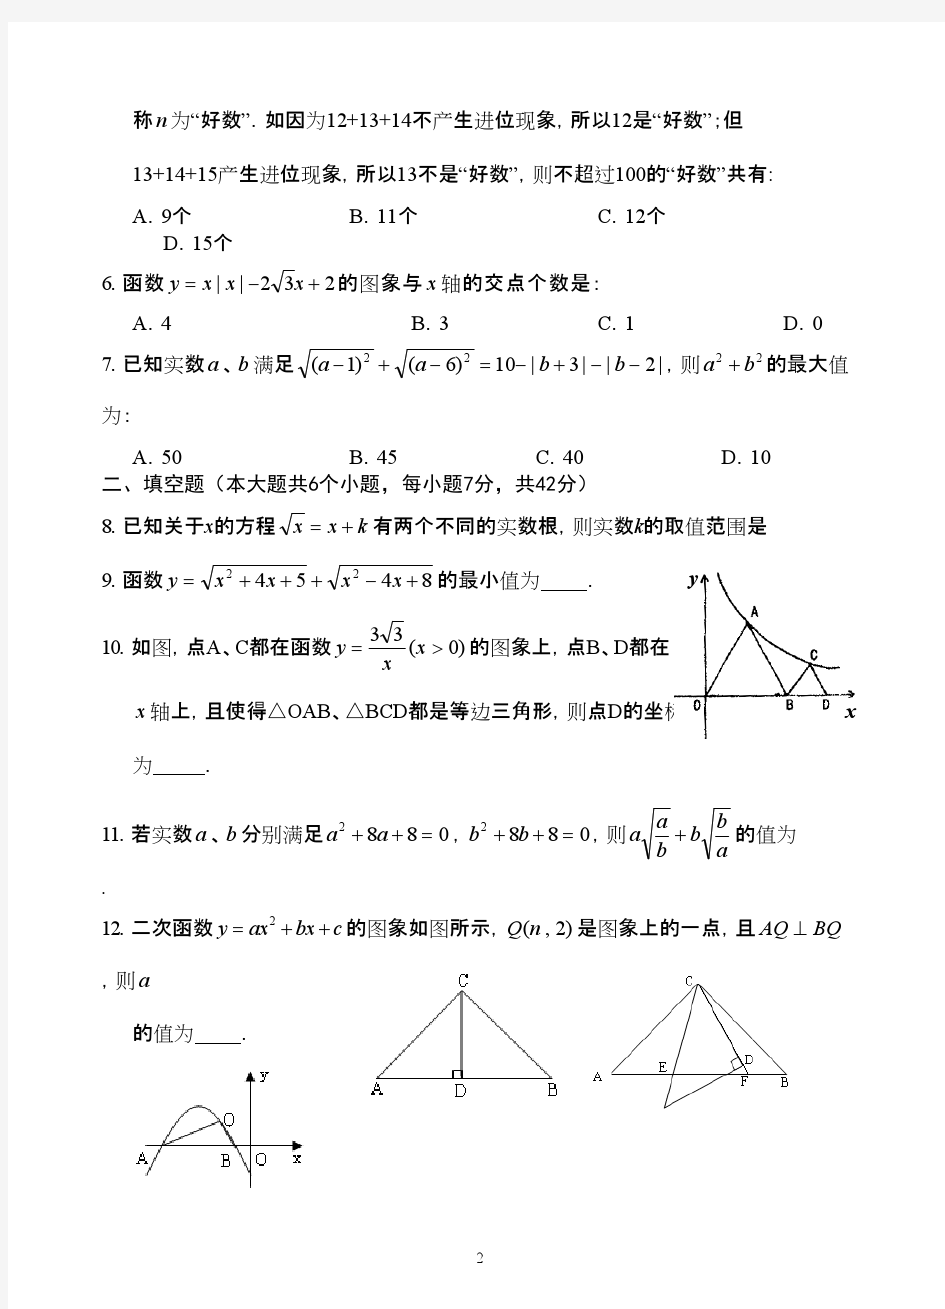 芜湖一中2013年高一理科实验班招生数学试题及答案